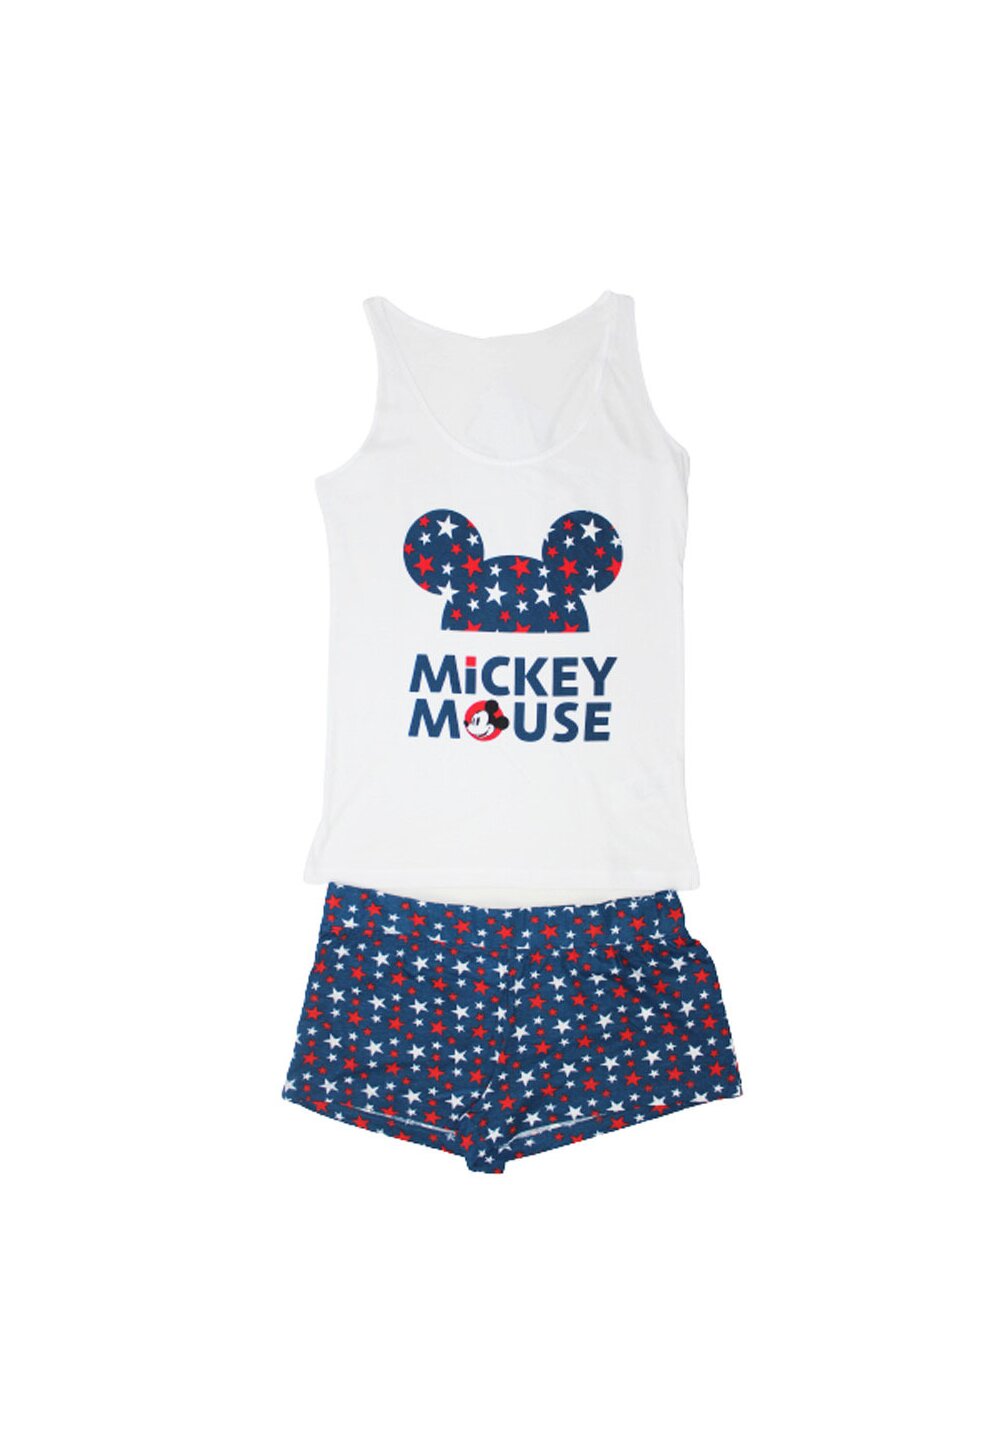 Pijama vara, Mickey Mouse, alb cu stelute DISNEY